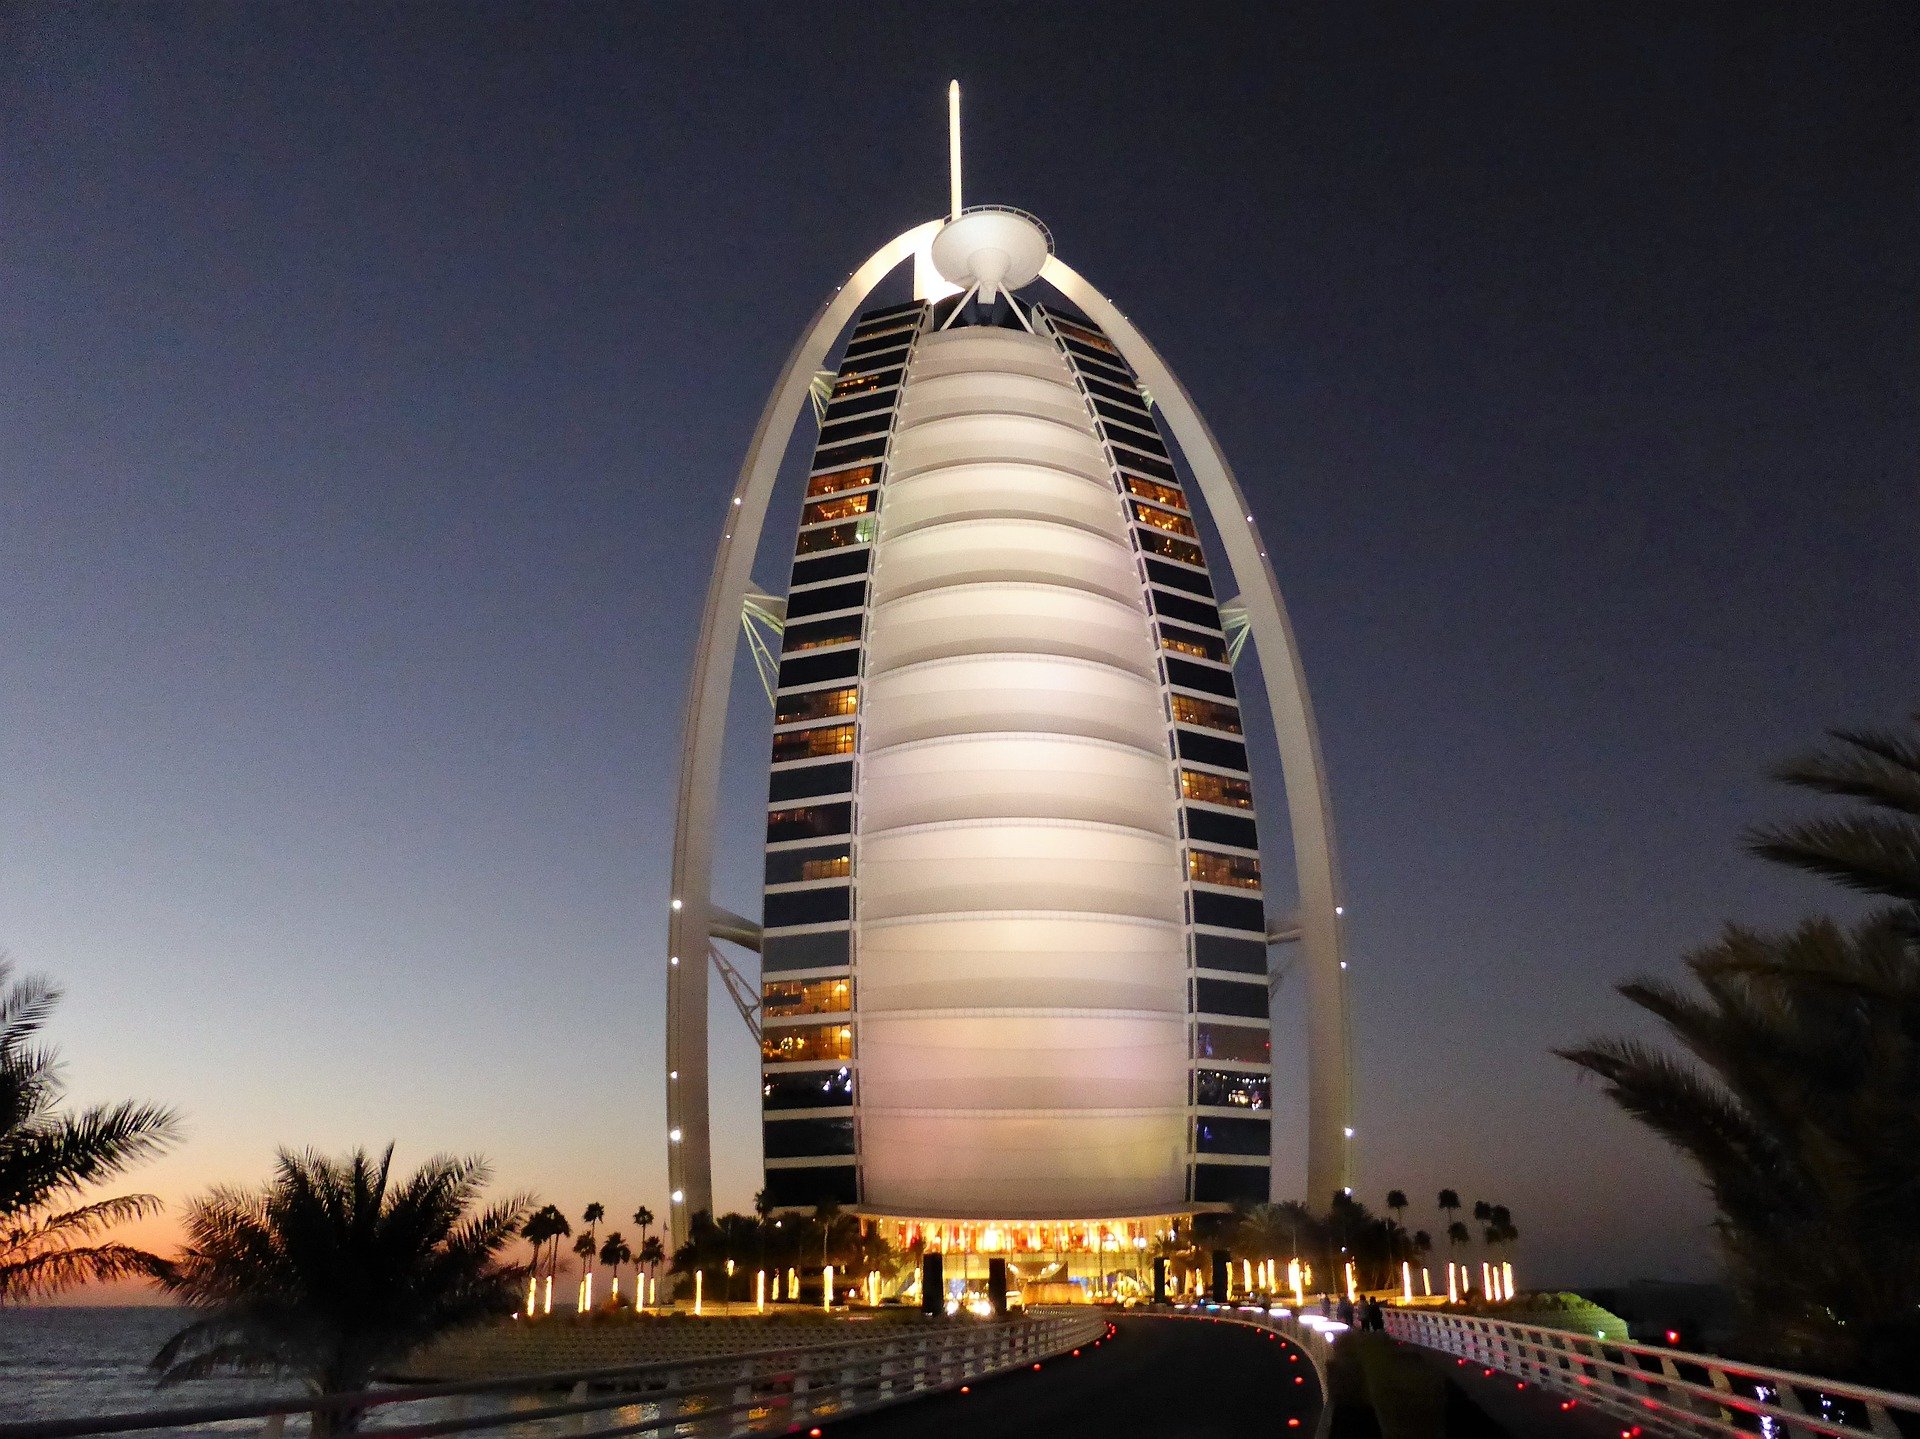 Location Hotel Dubai might be